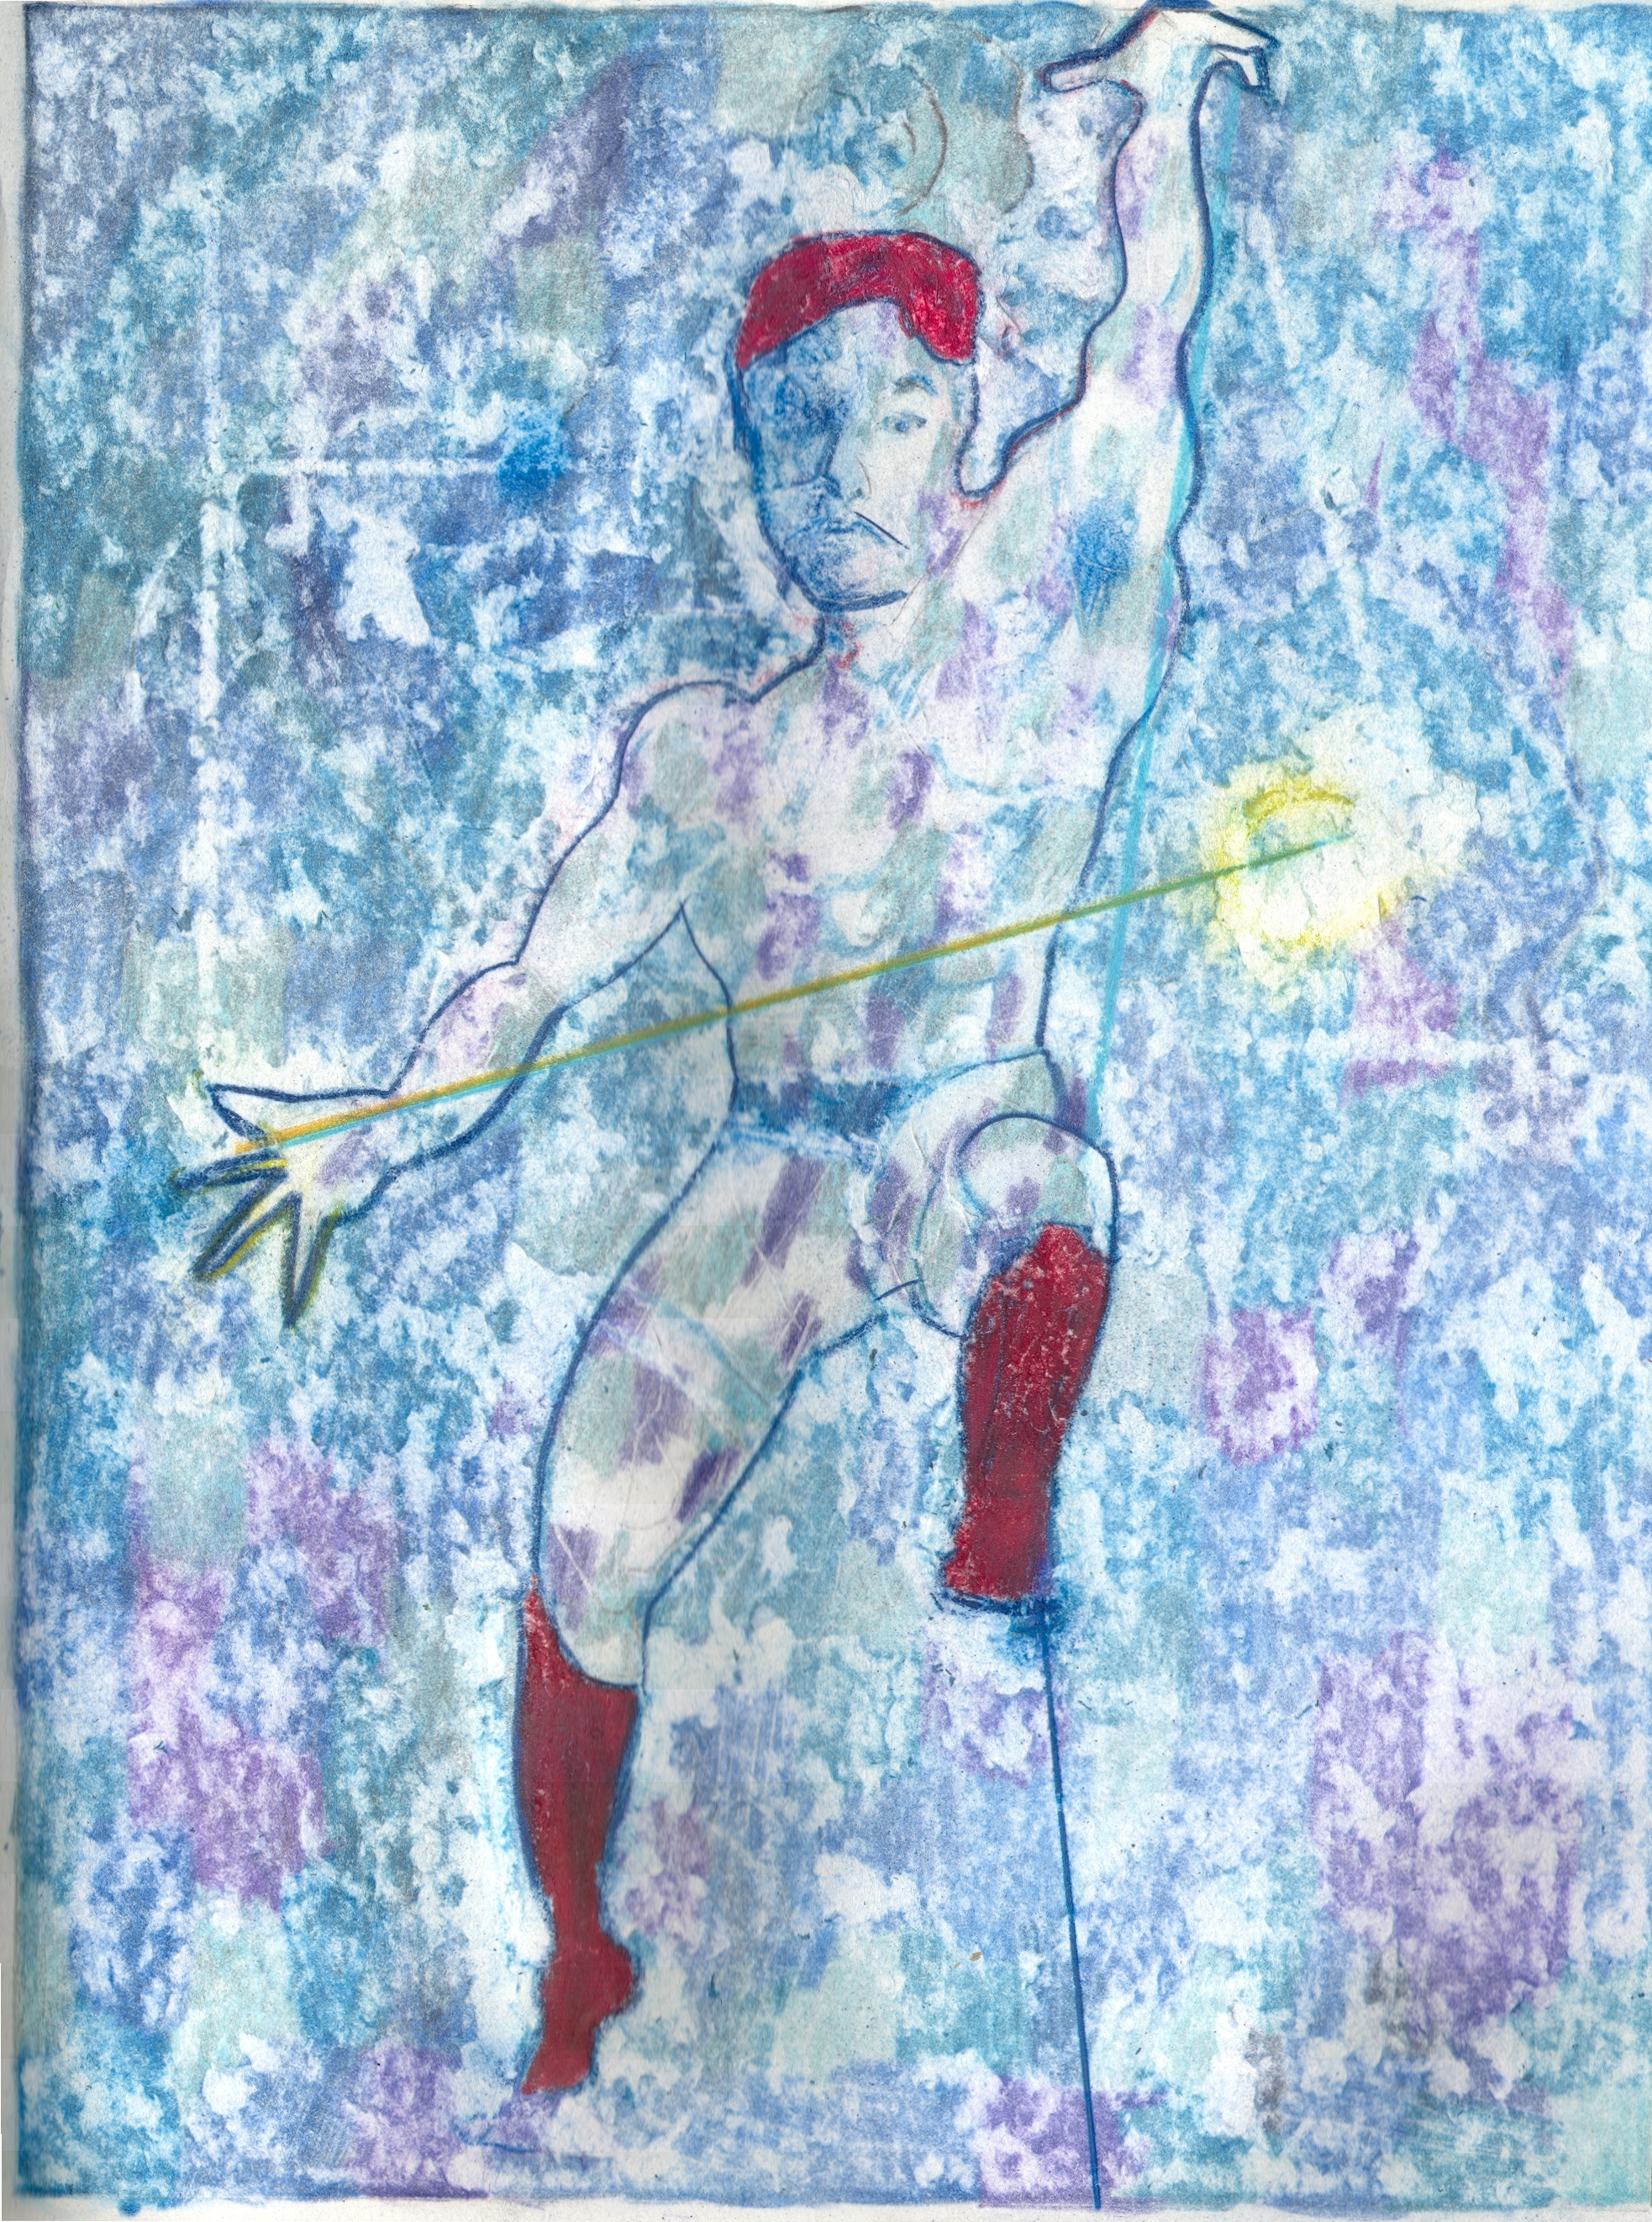  O.T. ( Selbstportrait als Tänzer ), 2019  Buntstift auf Papier, 26x35.5cm 